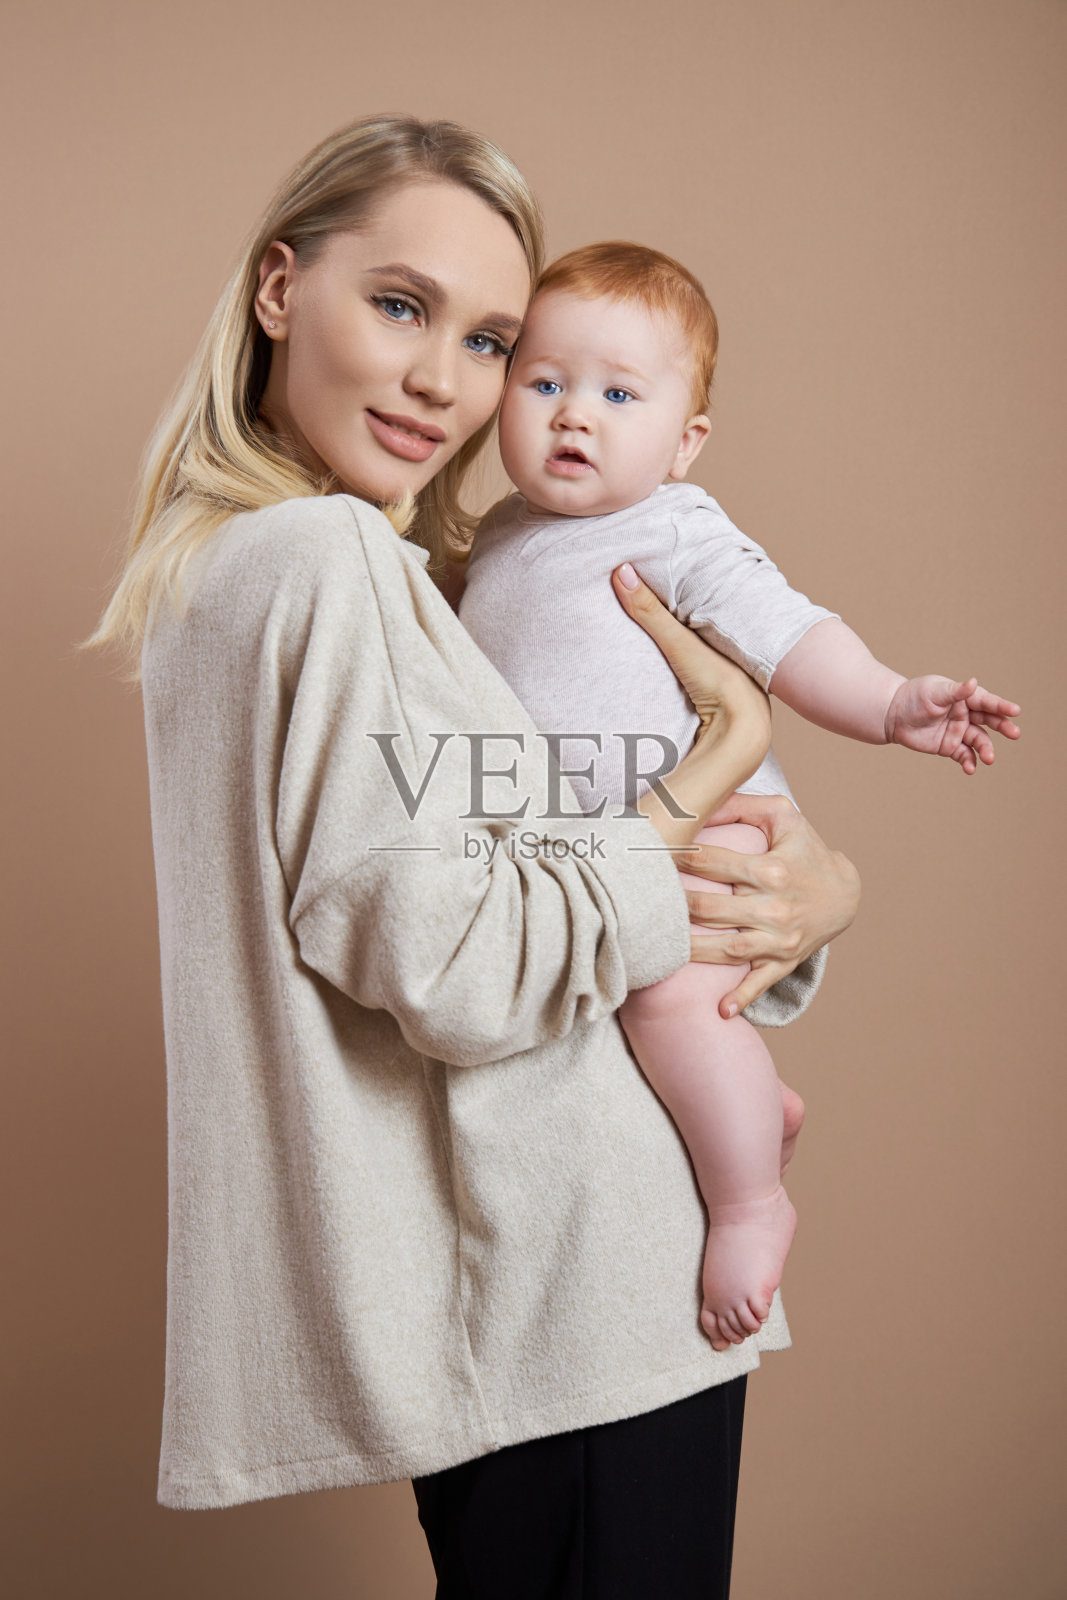 那位妇女怀里抱着一个婴儿。一个年轻母亲在生完孩子后的肖像。年轻的家庭照片摄影图片